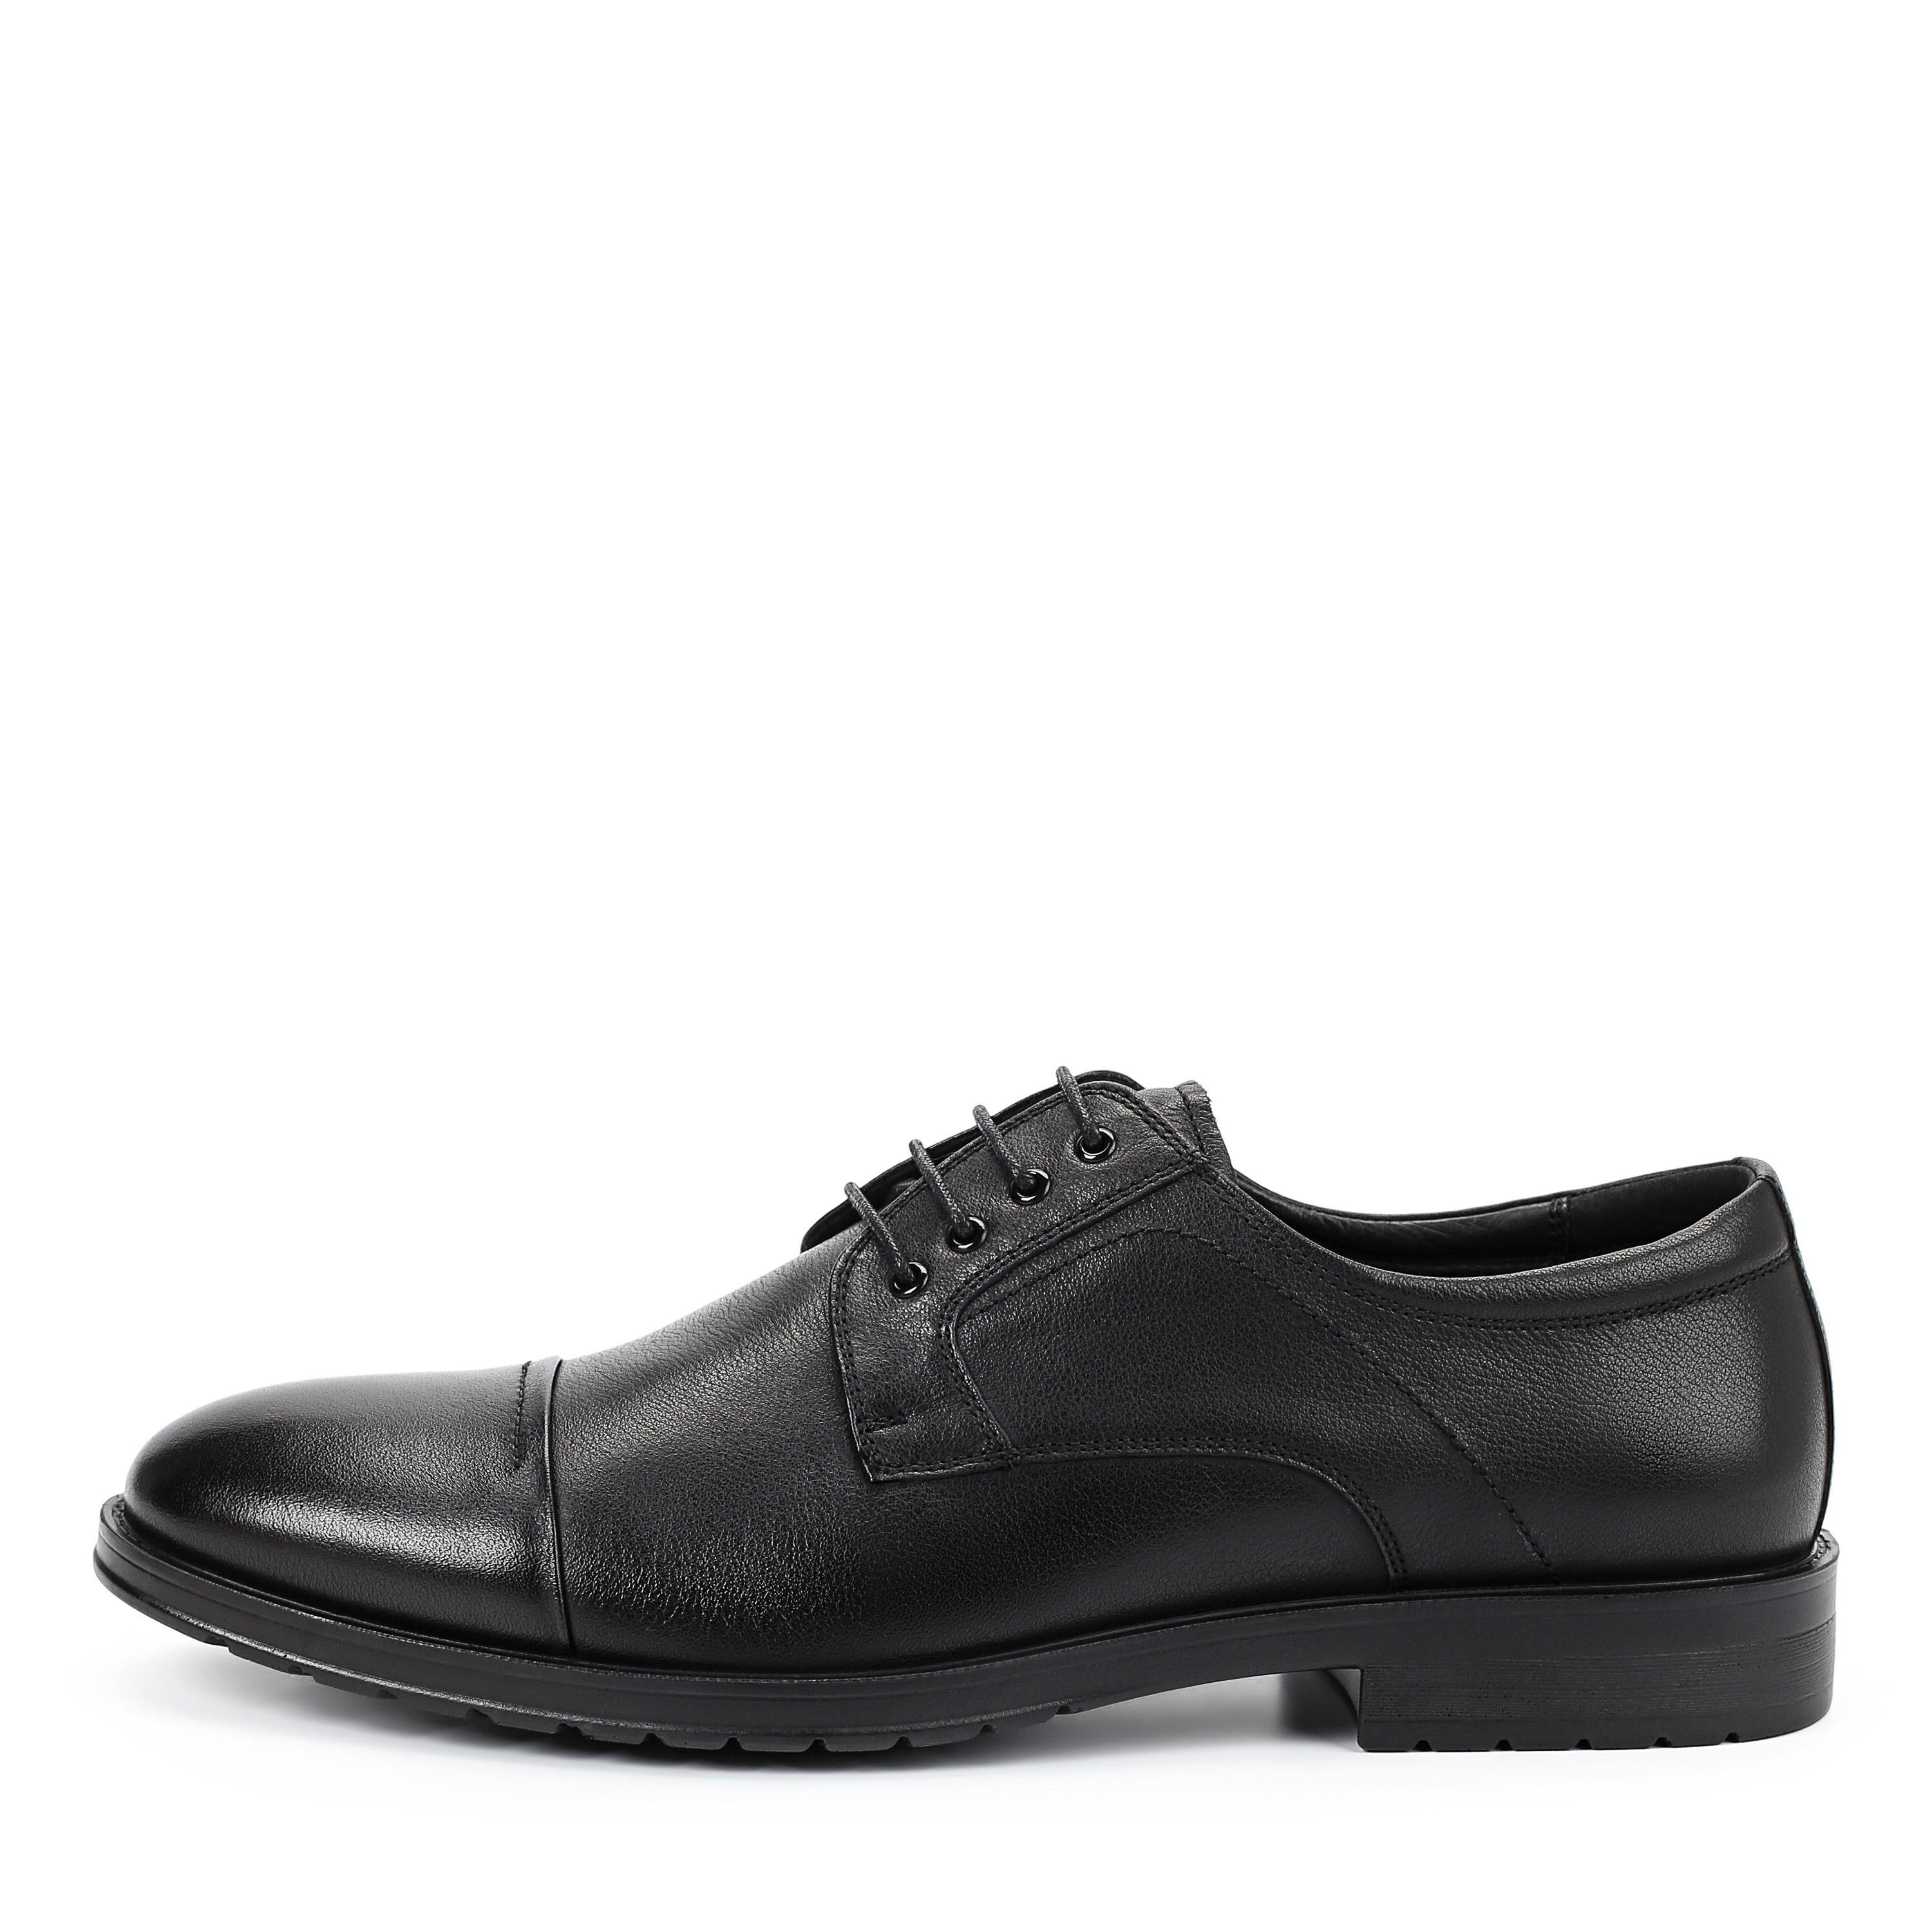 Туфли Thomas Munz 104-019E-1101, цвет черный, размер 41 дерби - фото 1